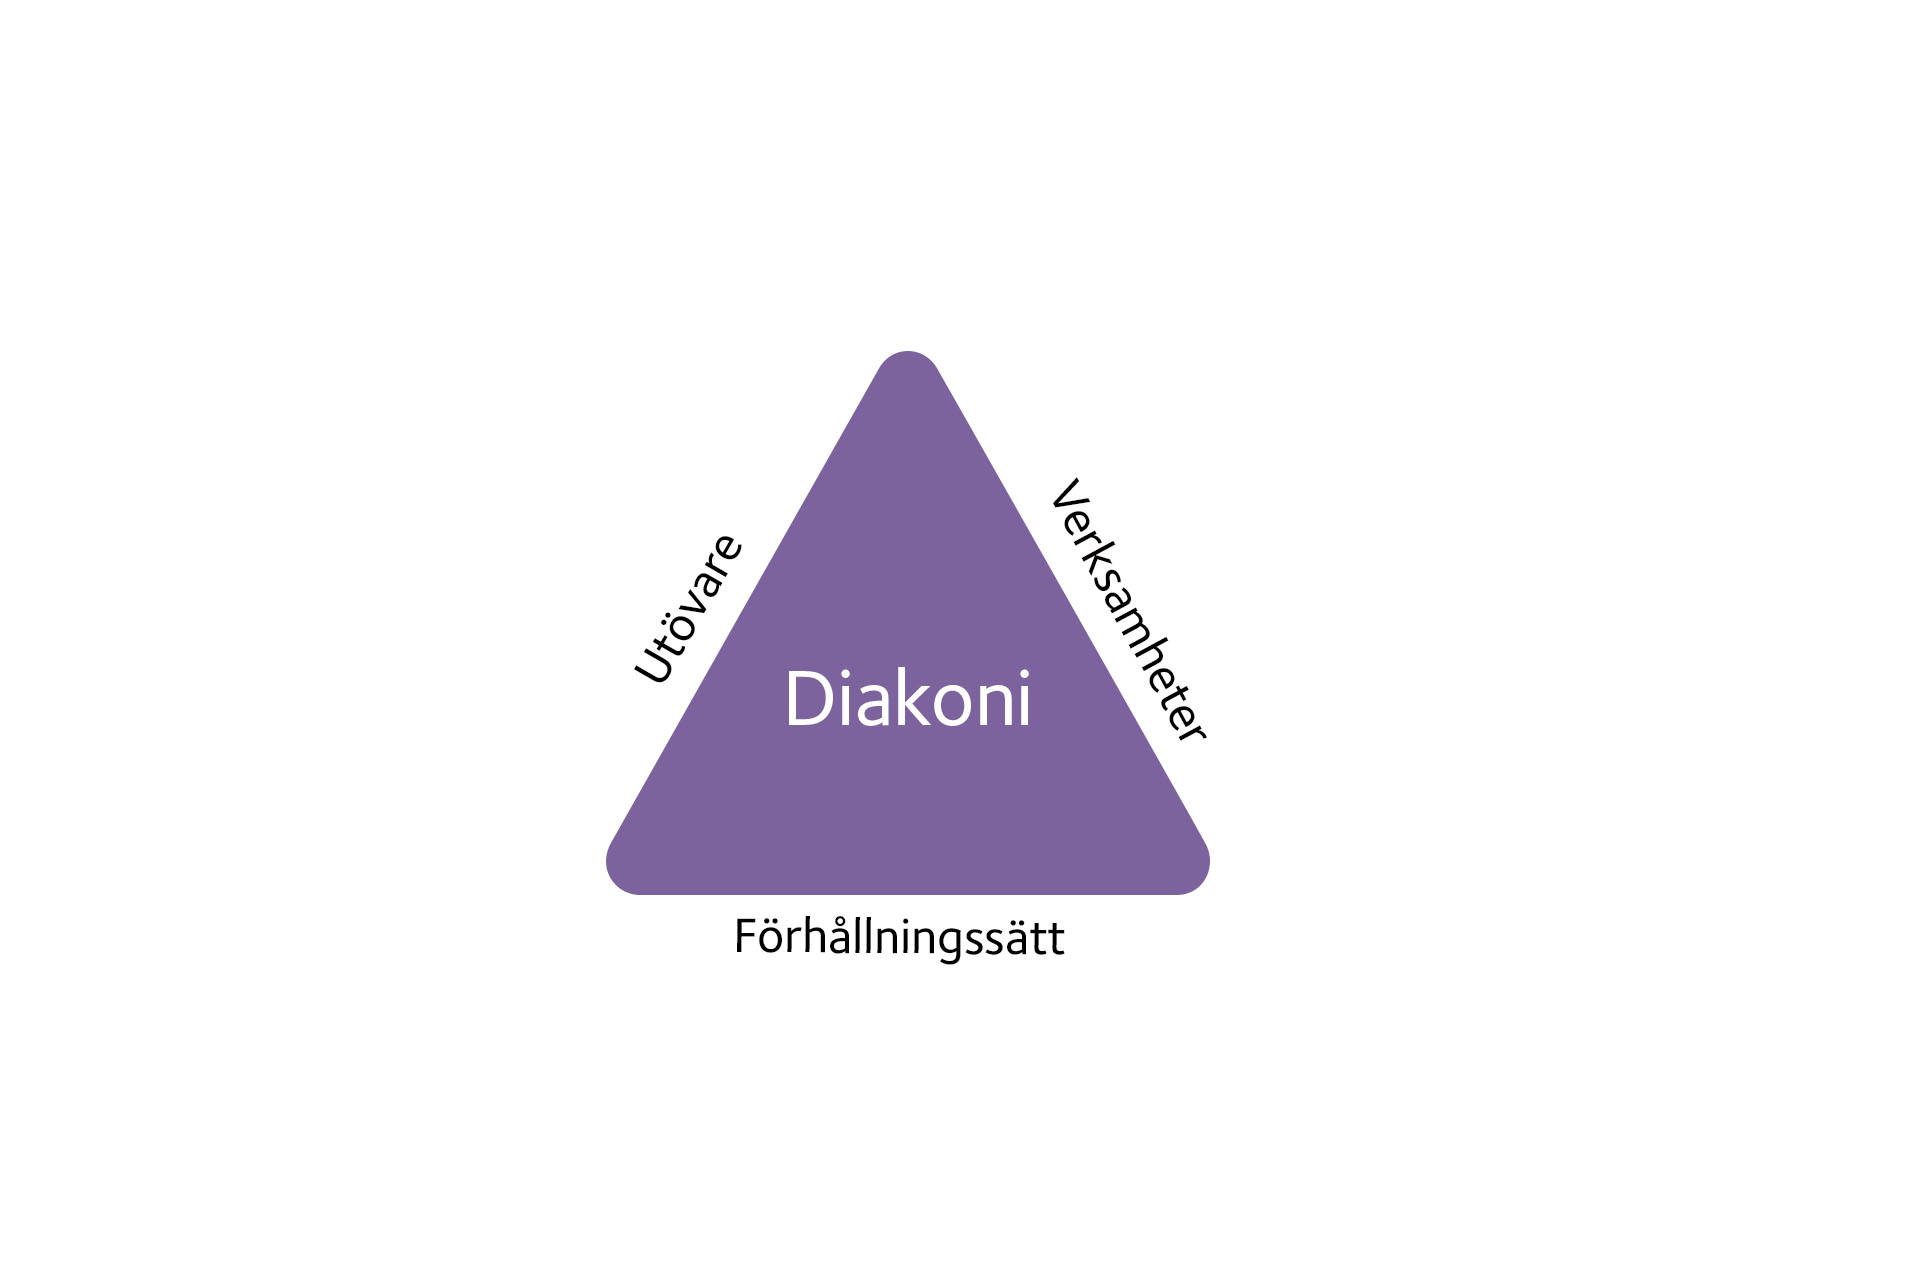 En lila triangel som det står diakoni i. Vid de olika sidorna står de tre orden utövare, verksamheter och förhållningssätt. 